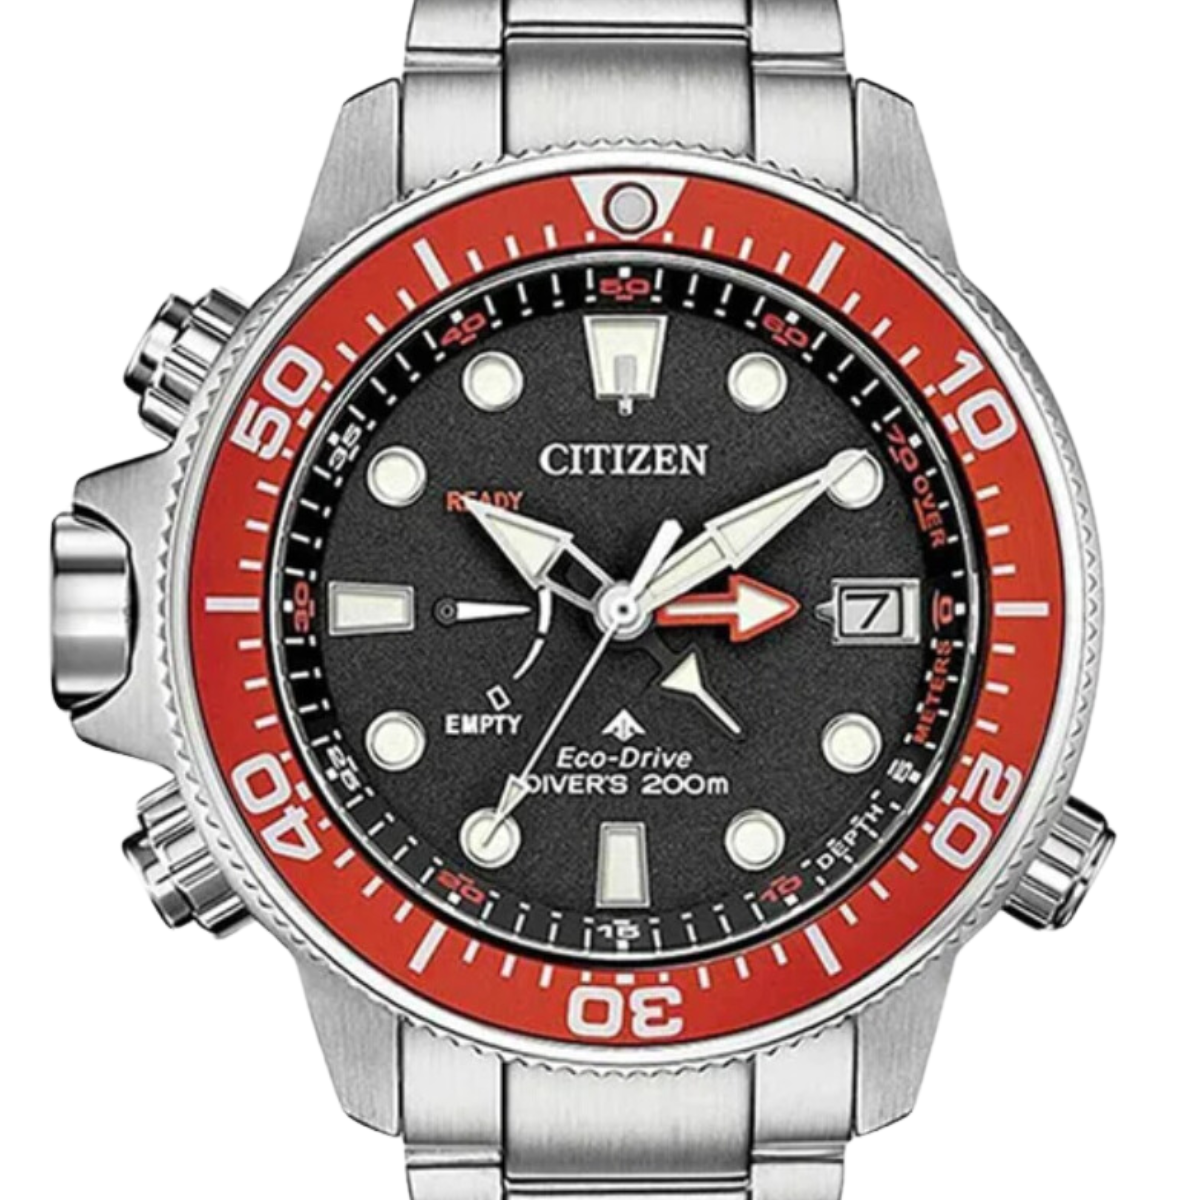 Citizen Promaster Aqualand BN2039-59E Eco-Drive Divers 200m Watch (PRE-ORDER)